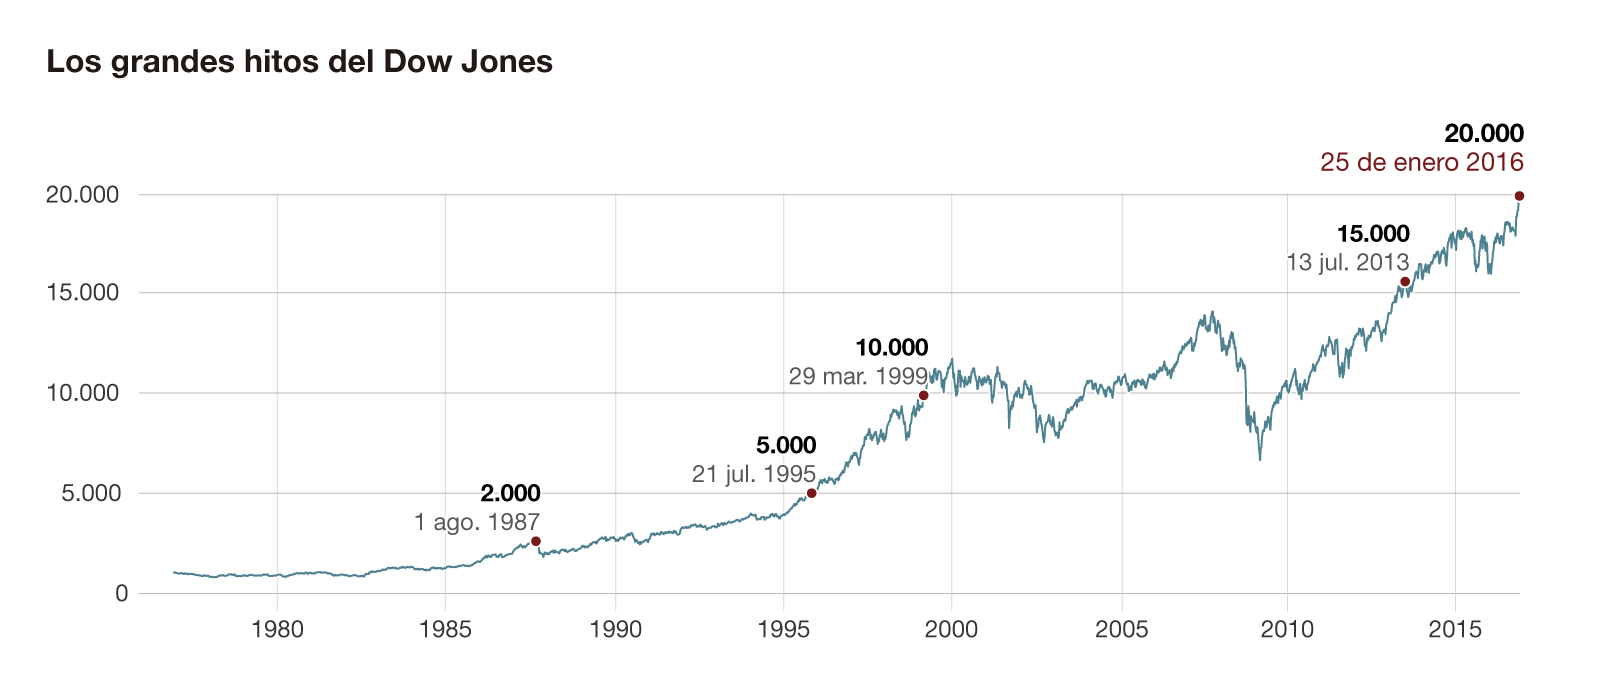 El Dow Jones toca los 20.000 puntos por primera vez en la historia